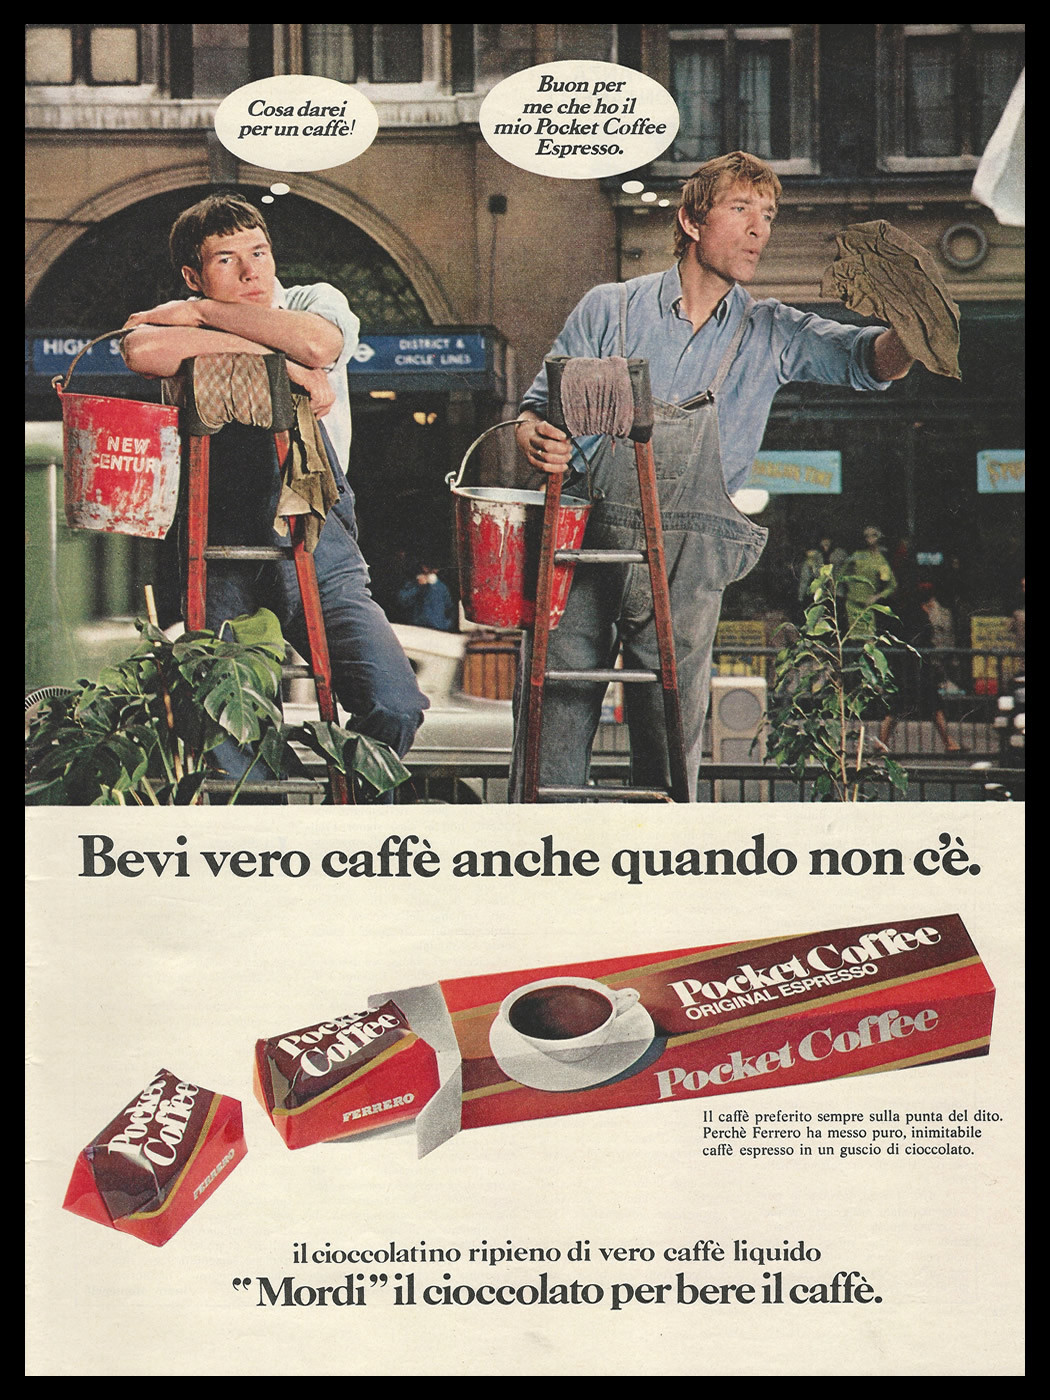 FERRERO Pocket Coffee - Bozzetto preparatorio pubblicitario